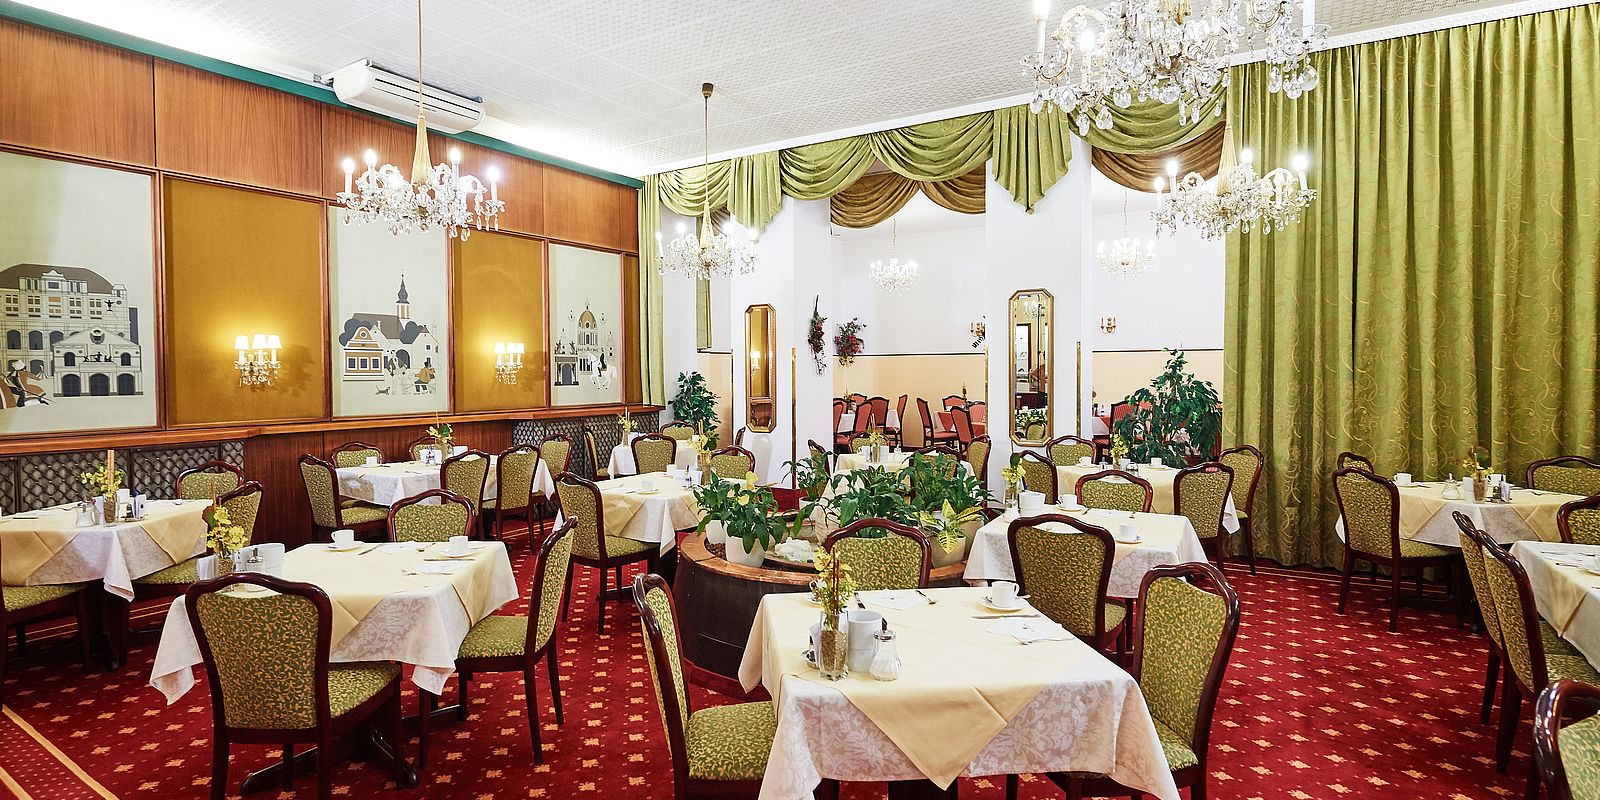 Frühstücksraum im Hotel Austria, Wien